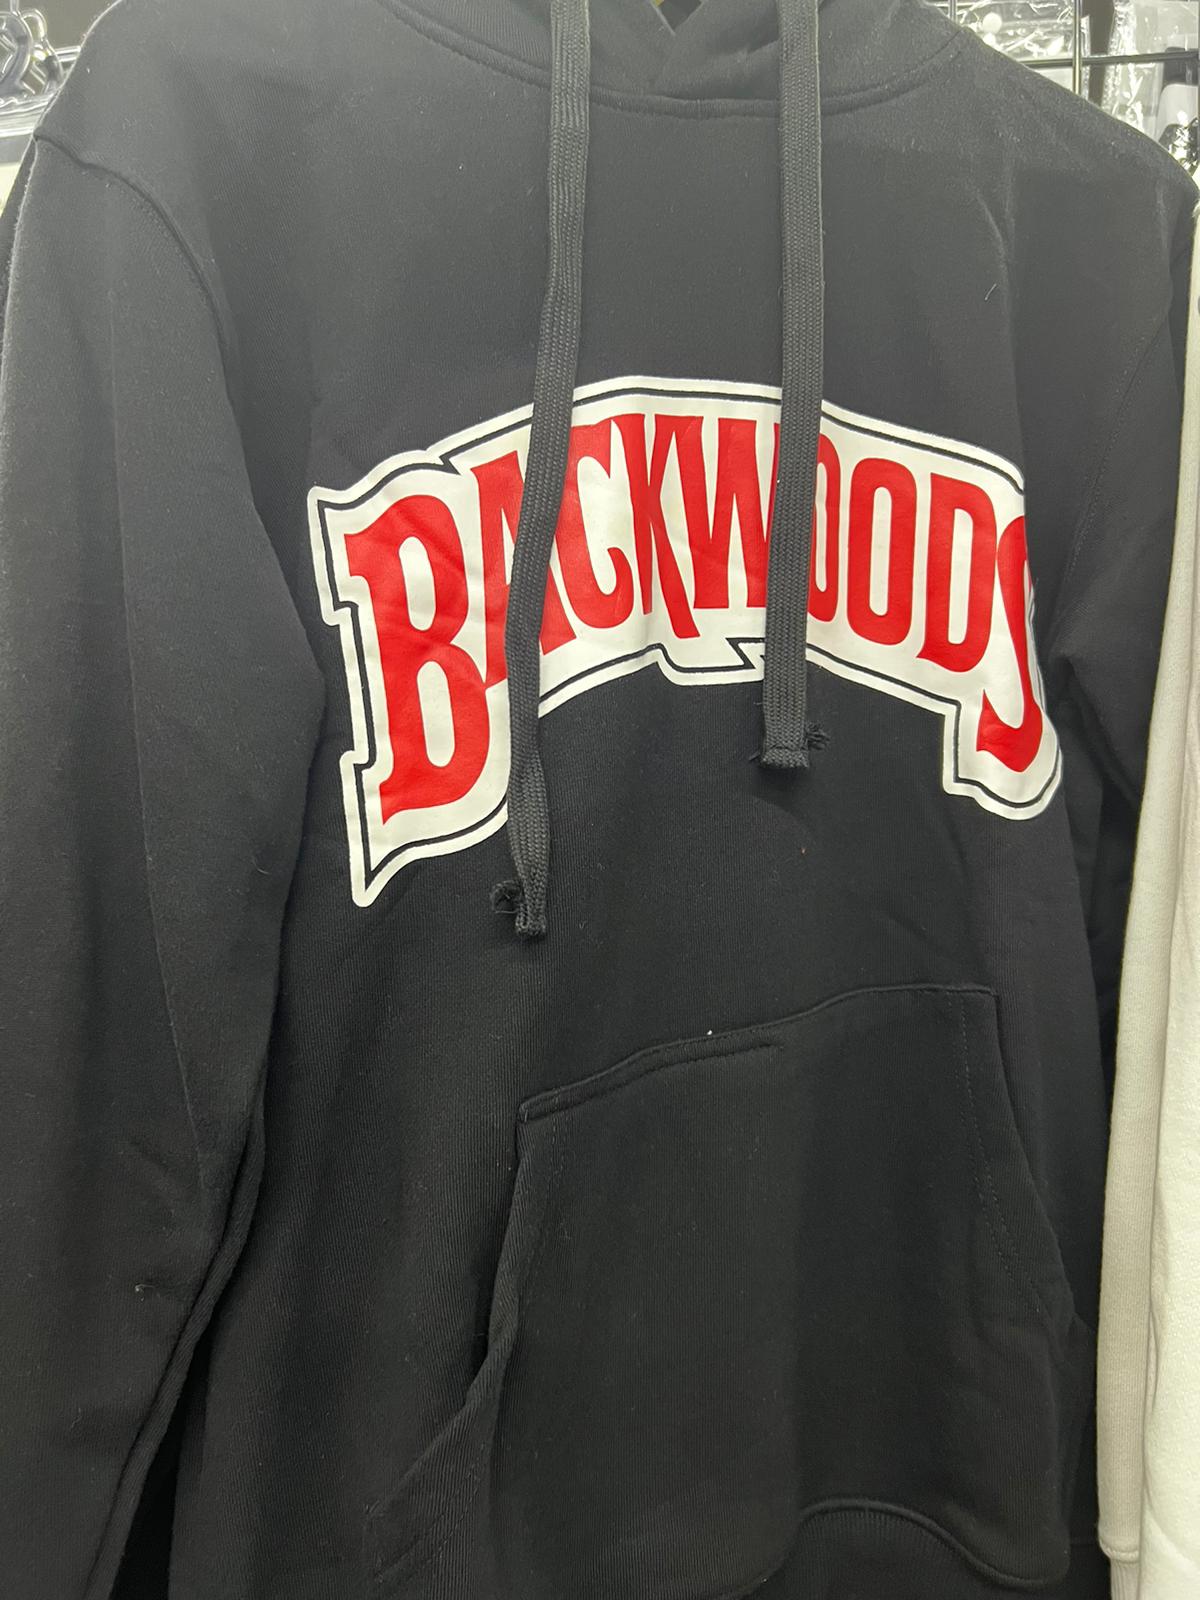 Backwoods Hoodie - Black (2X-Large)